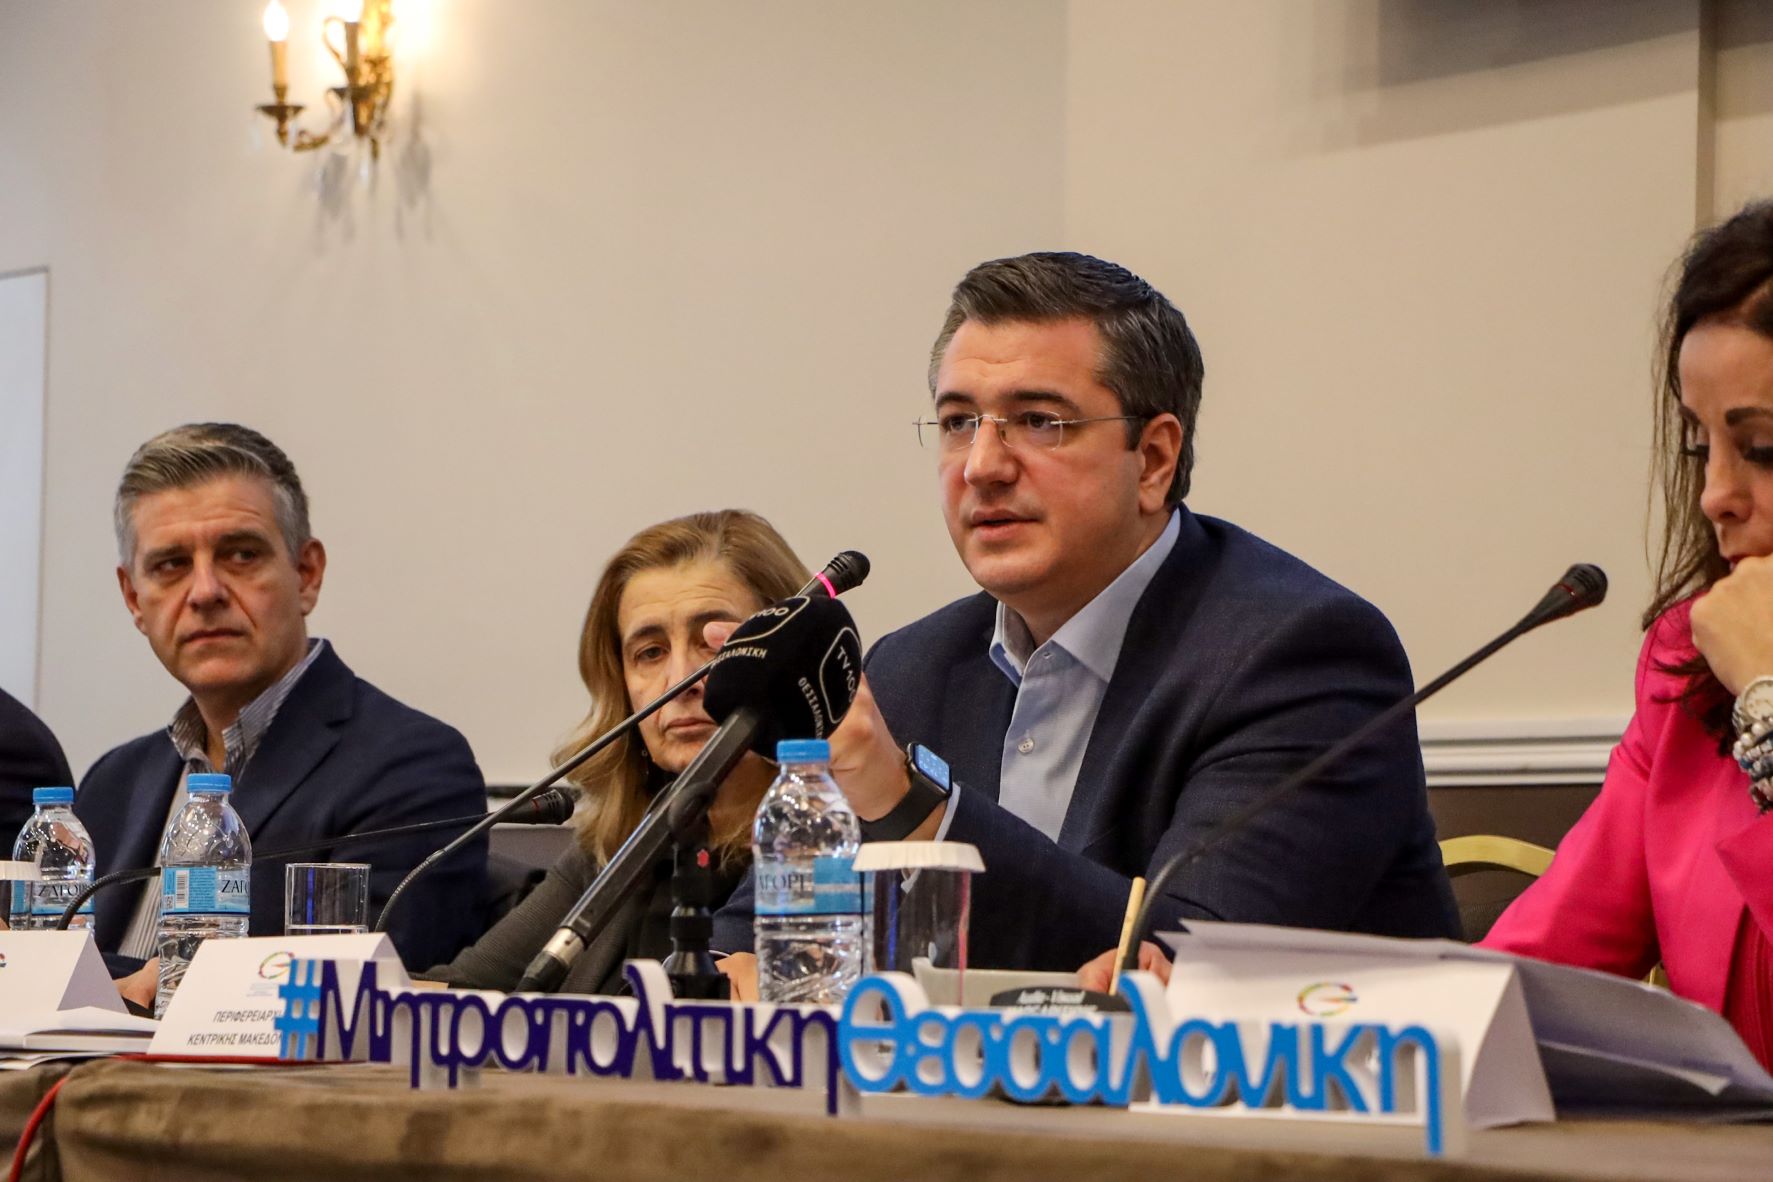 Α.Τζιτζικώστας: «Διπλάσιοι πόροι και 12 Δήμοι στο νέο Πρόγραμμα ‘Μητροπολιτική Θεσσαλονίκη’»